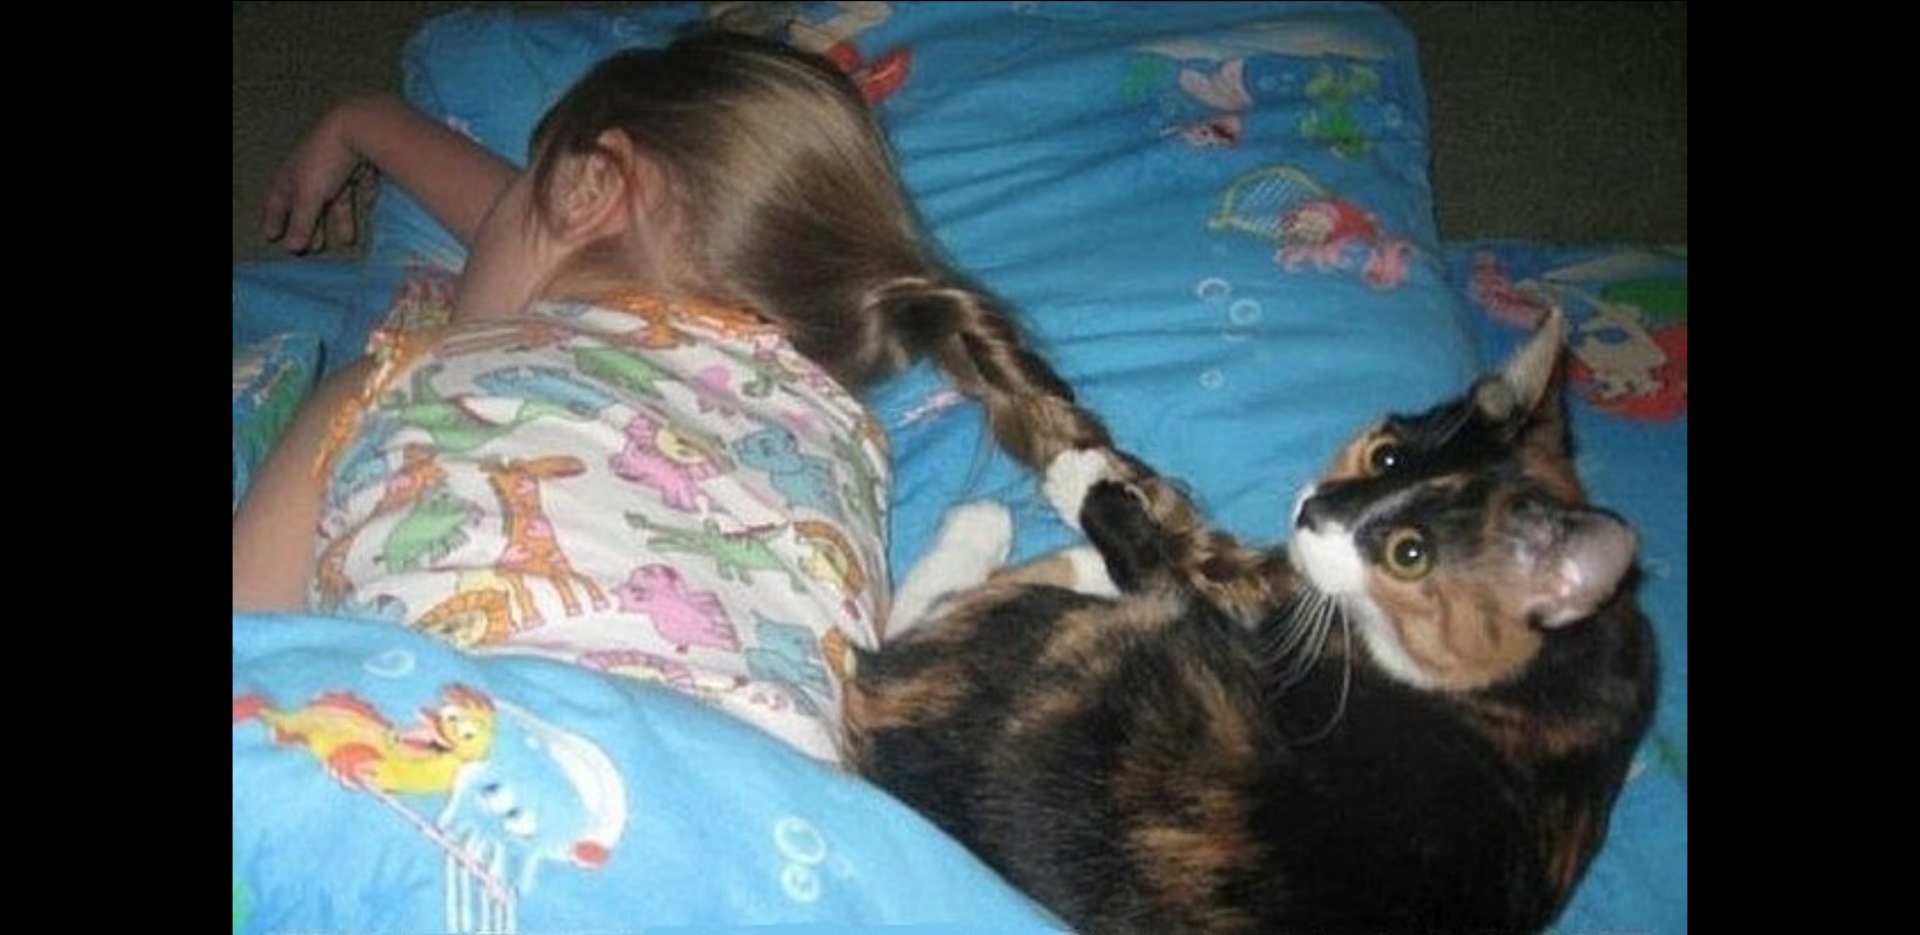 Чуть не проспал. Кот пора вставать. Котоматрица рано утром. Смешные картинки про кошек с надписями. Проснулись картинки смешные.